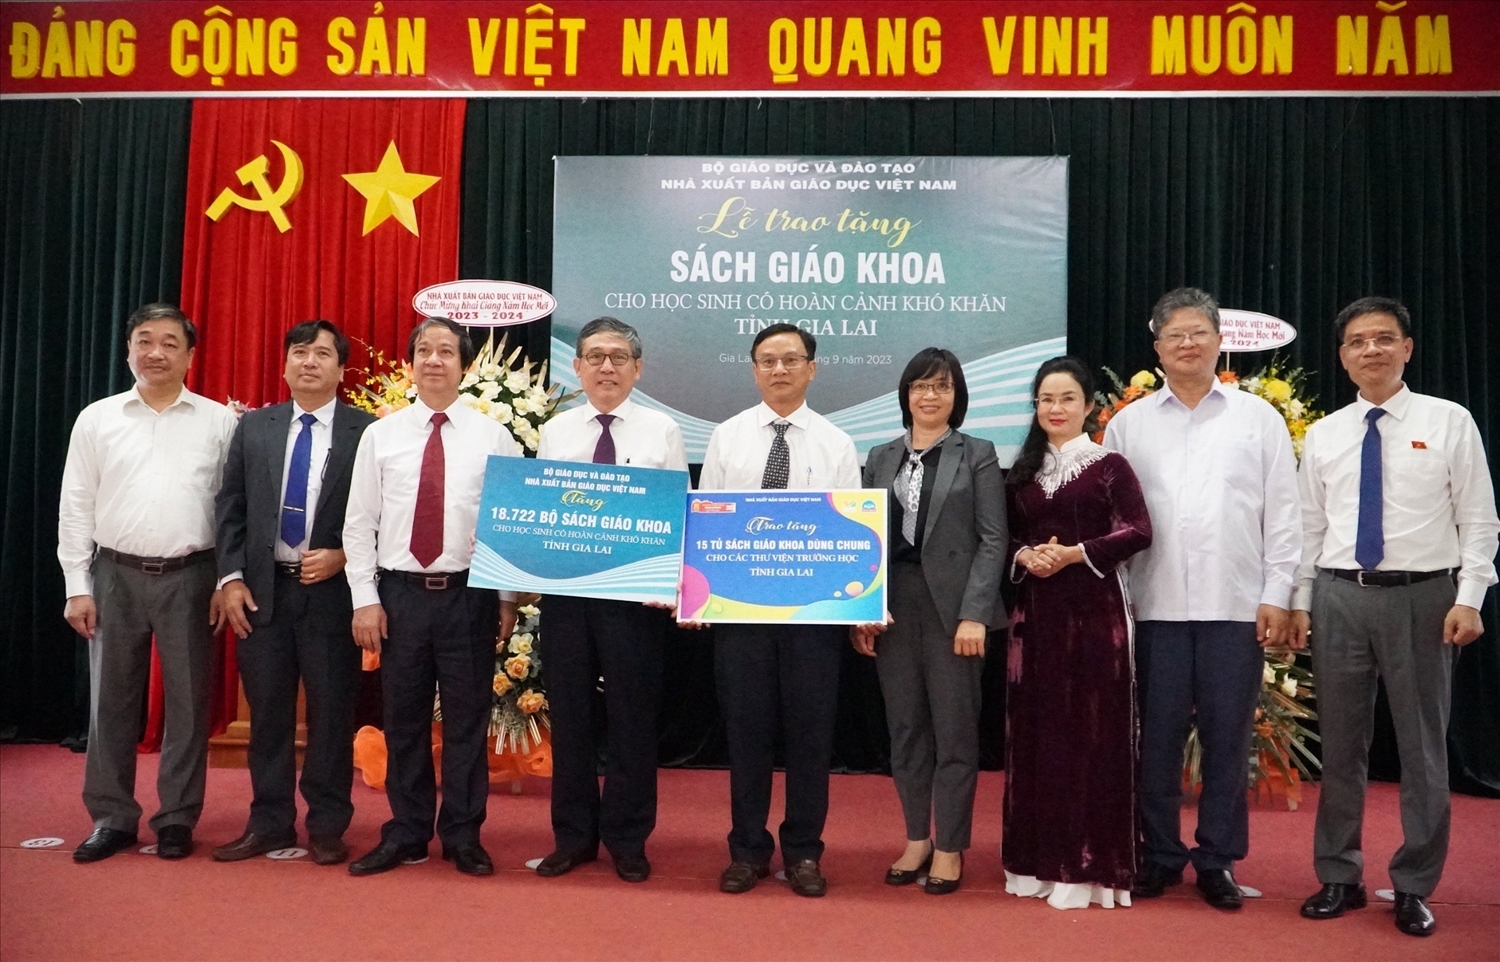 Bộ trưởng Nguyễn Kim Sơn cùng Nhà xuất bản Giáo dục Việt Nam trao tặng 18.722 bộ sách giáo khoa cho học sinh nghèo có hoàn cảnh khó khăn tỉnh Gia Lai